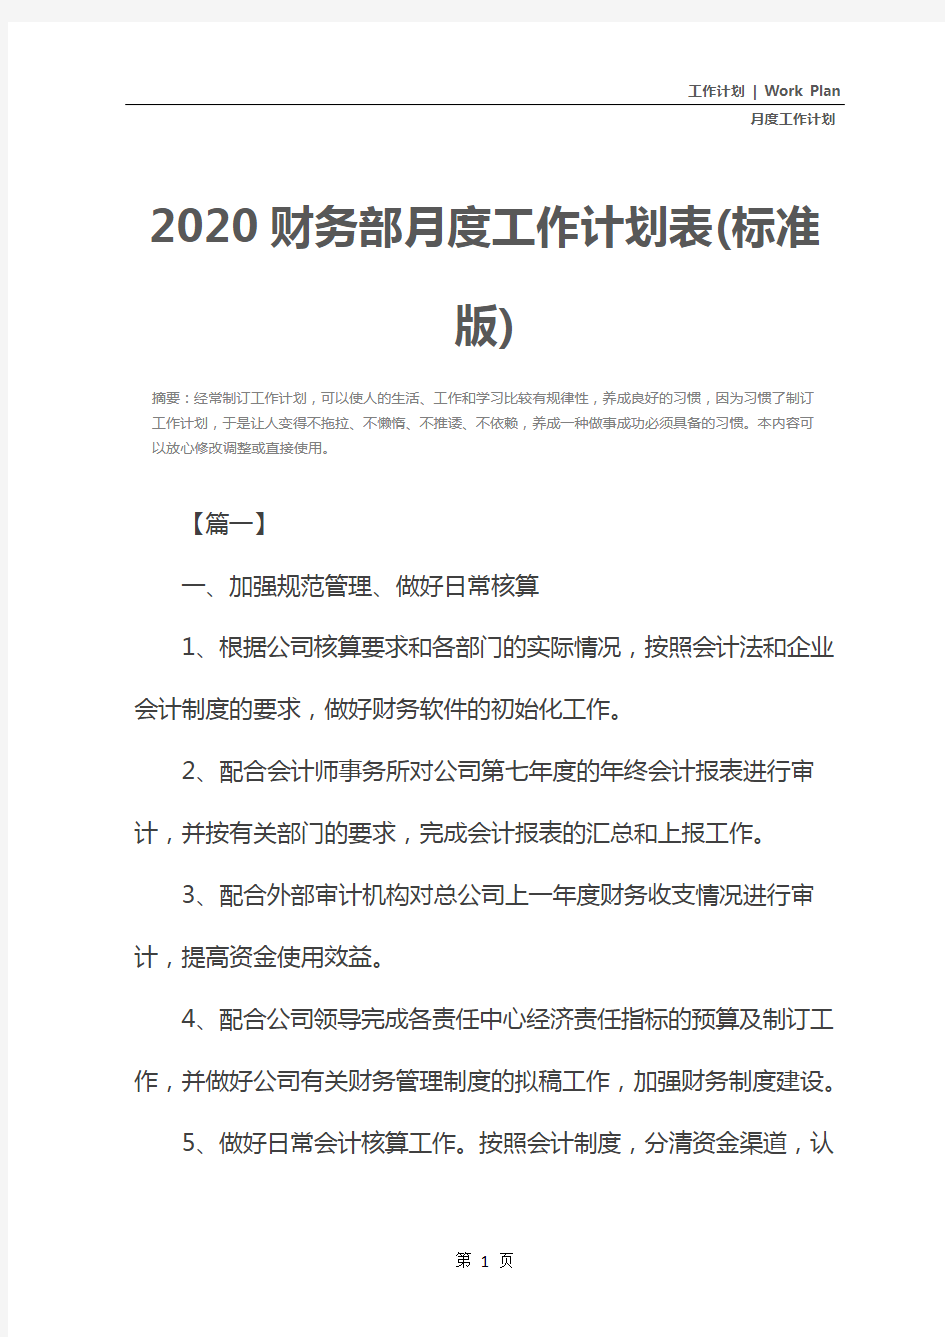 2020财务部月度工作计划表(标准版)